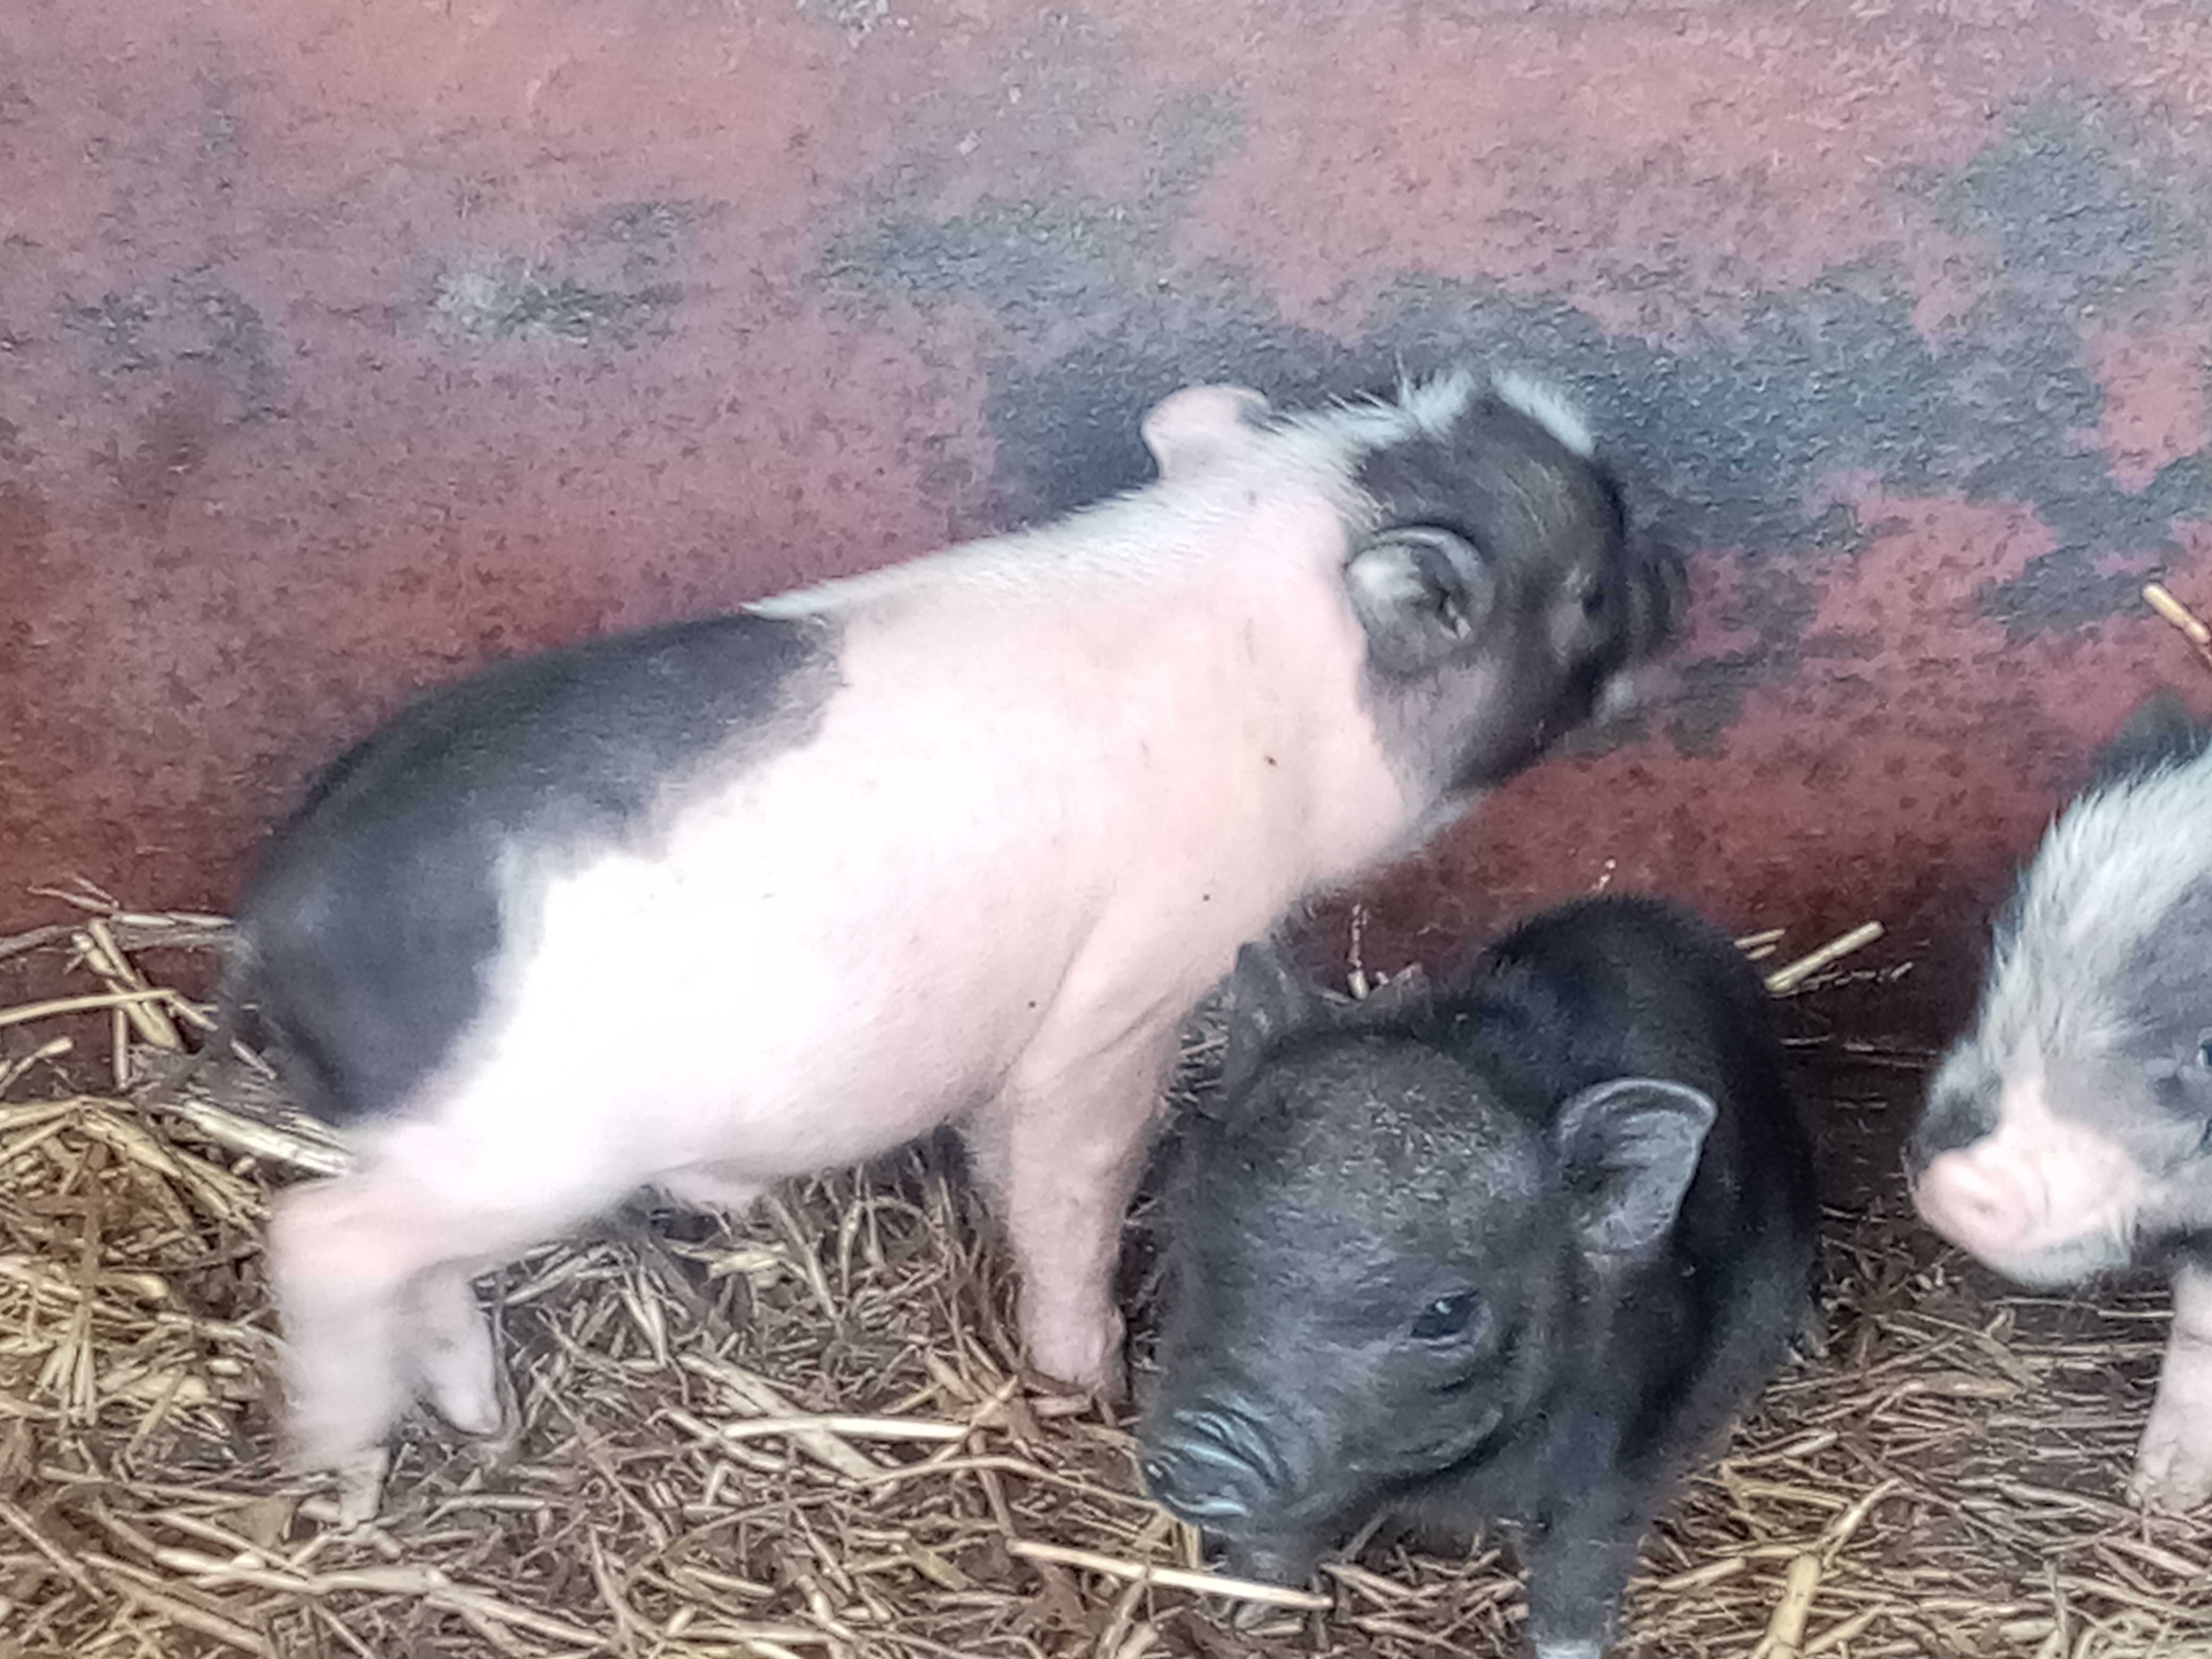 Porcos vietnamitas / nini pigs